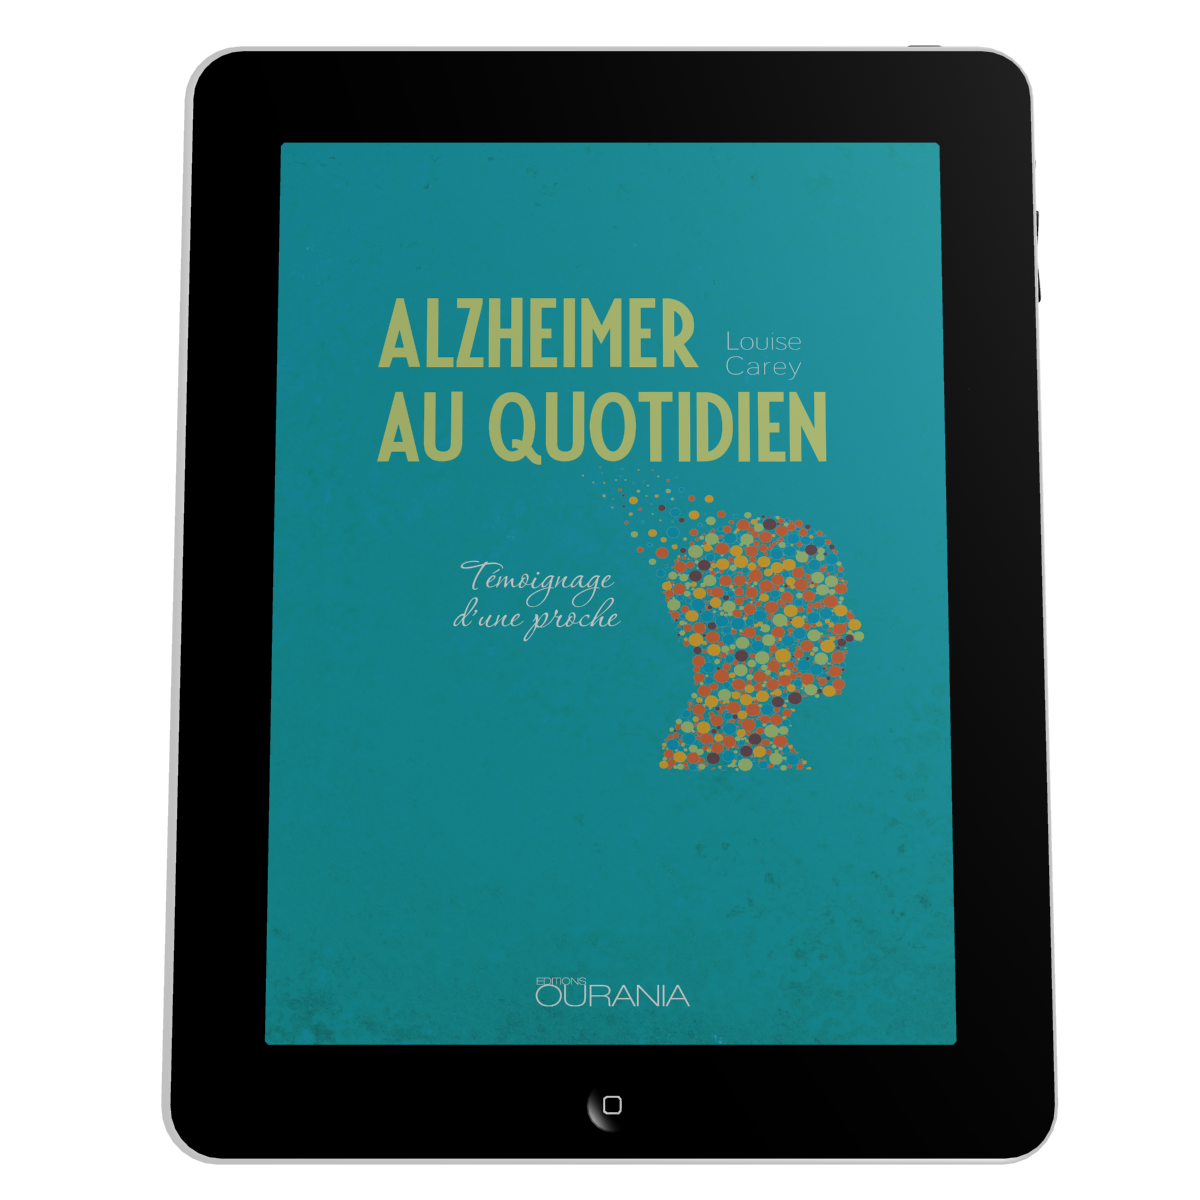 Alzheimer au quotidien - Témoignage d'une proche - ebook